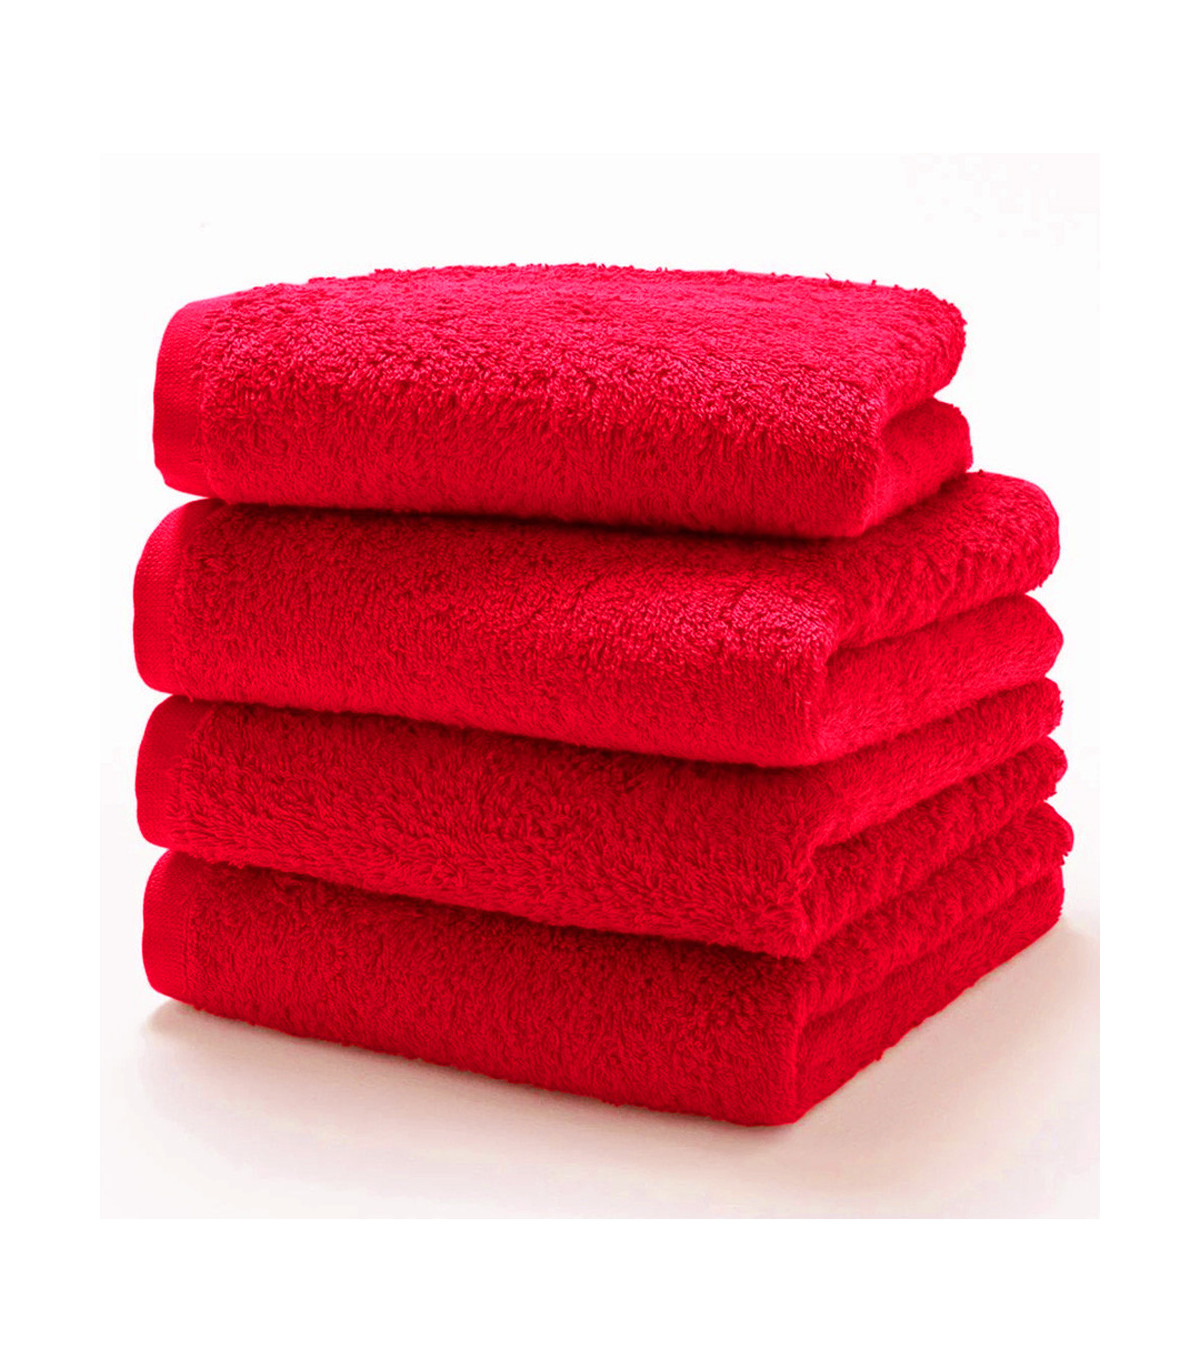 serviette rouge brodée en cadeau pour bébé et adultes, brod